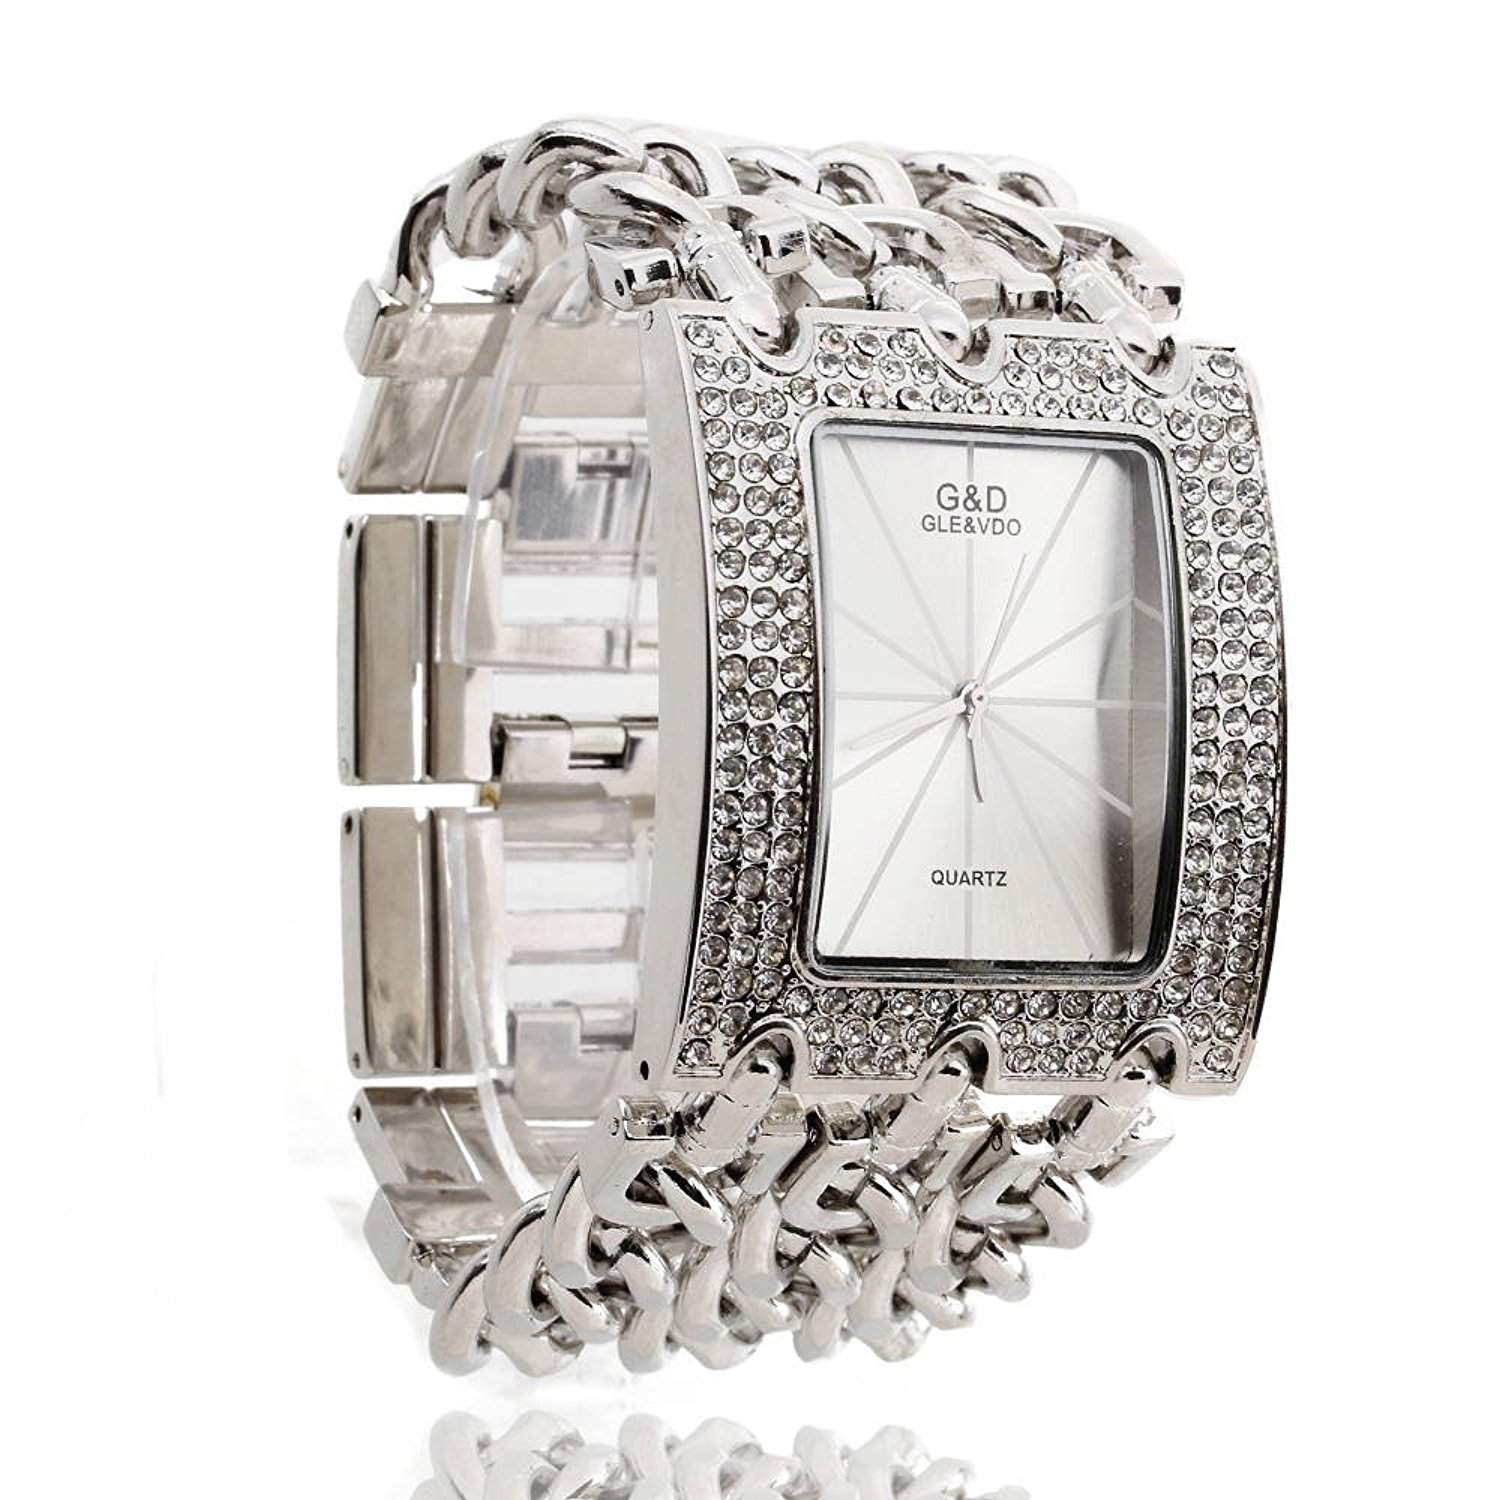 FACILLA® Damen Armband Uhr Damenuhr Armbanduhr Quarzuhr Legierung Silberfarbig mit Strass